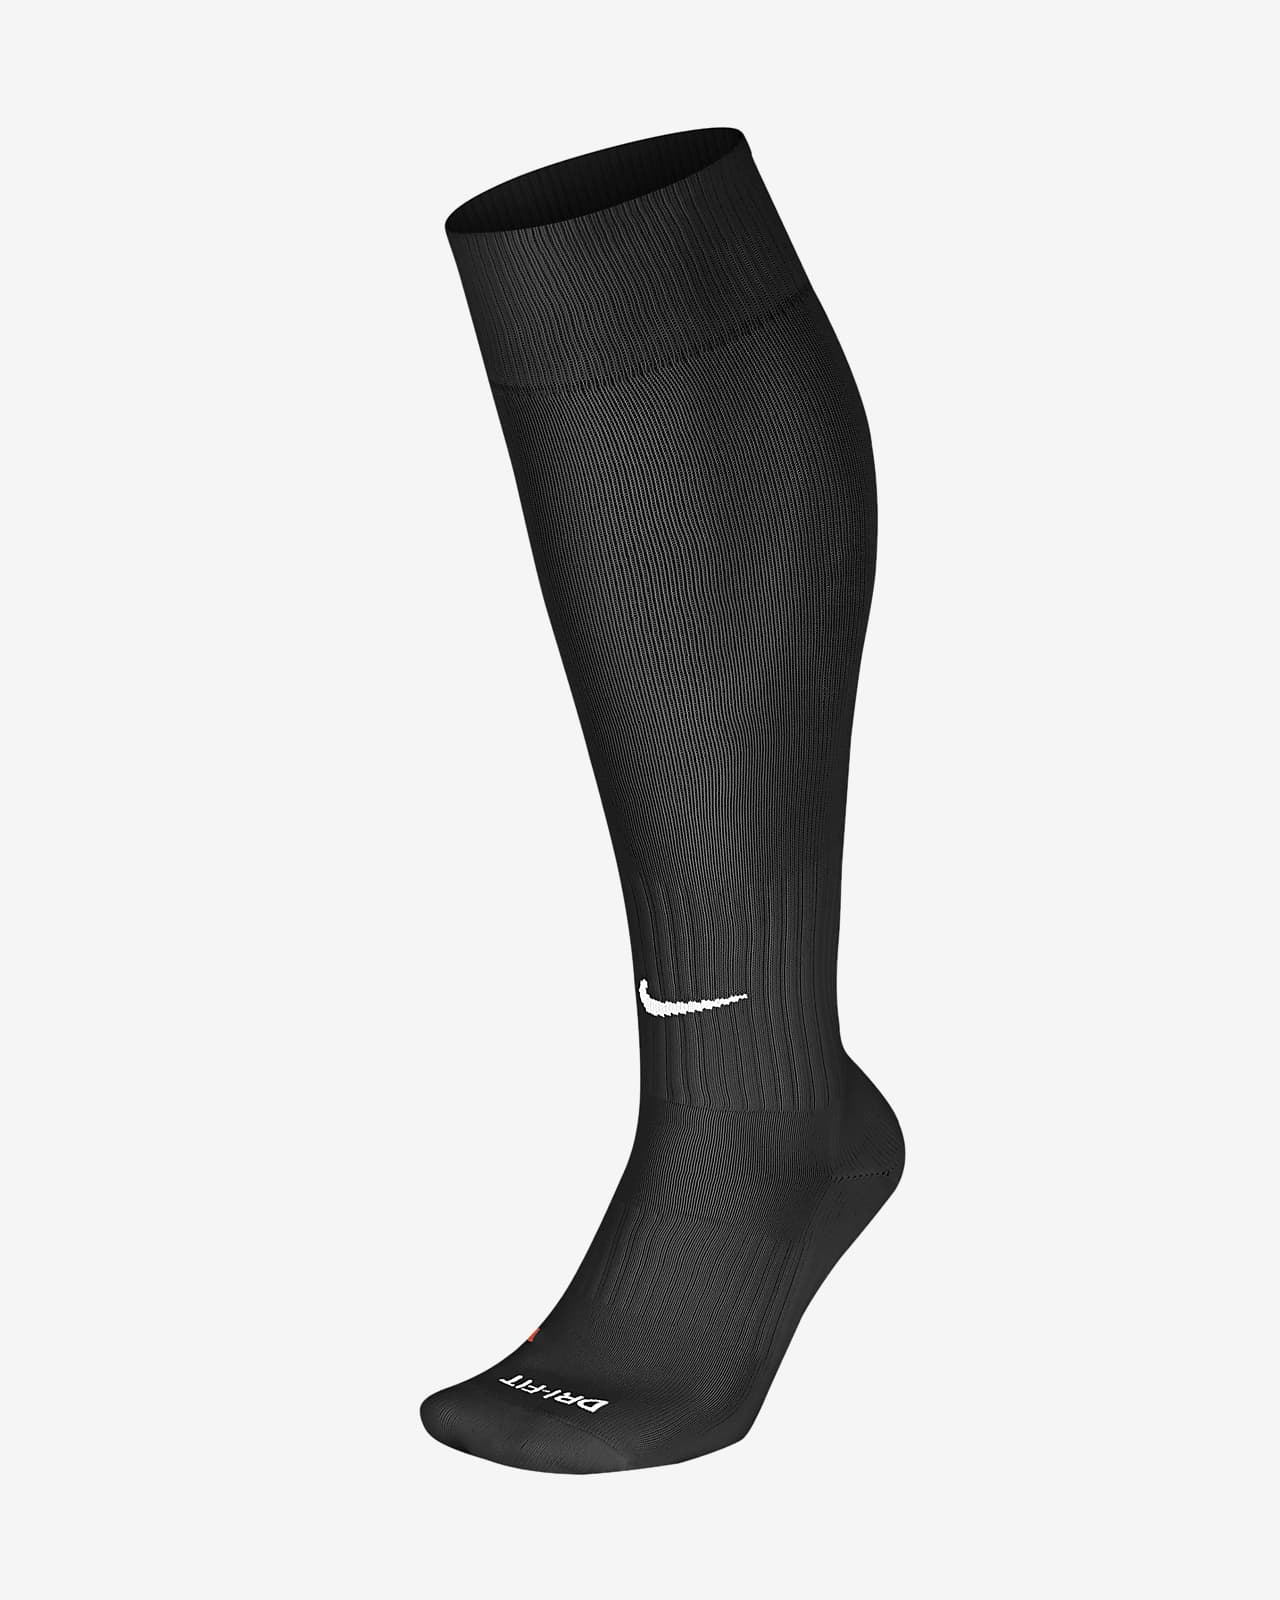 Calf Soccer Socks. Nike JP